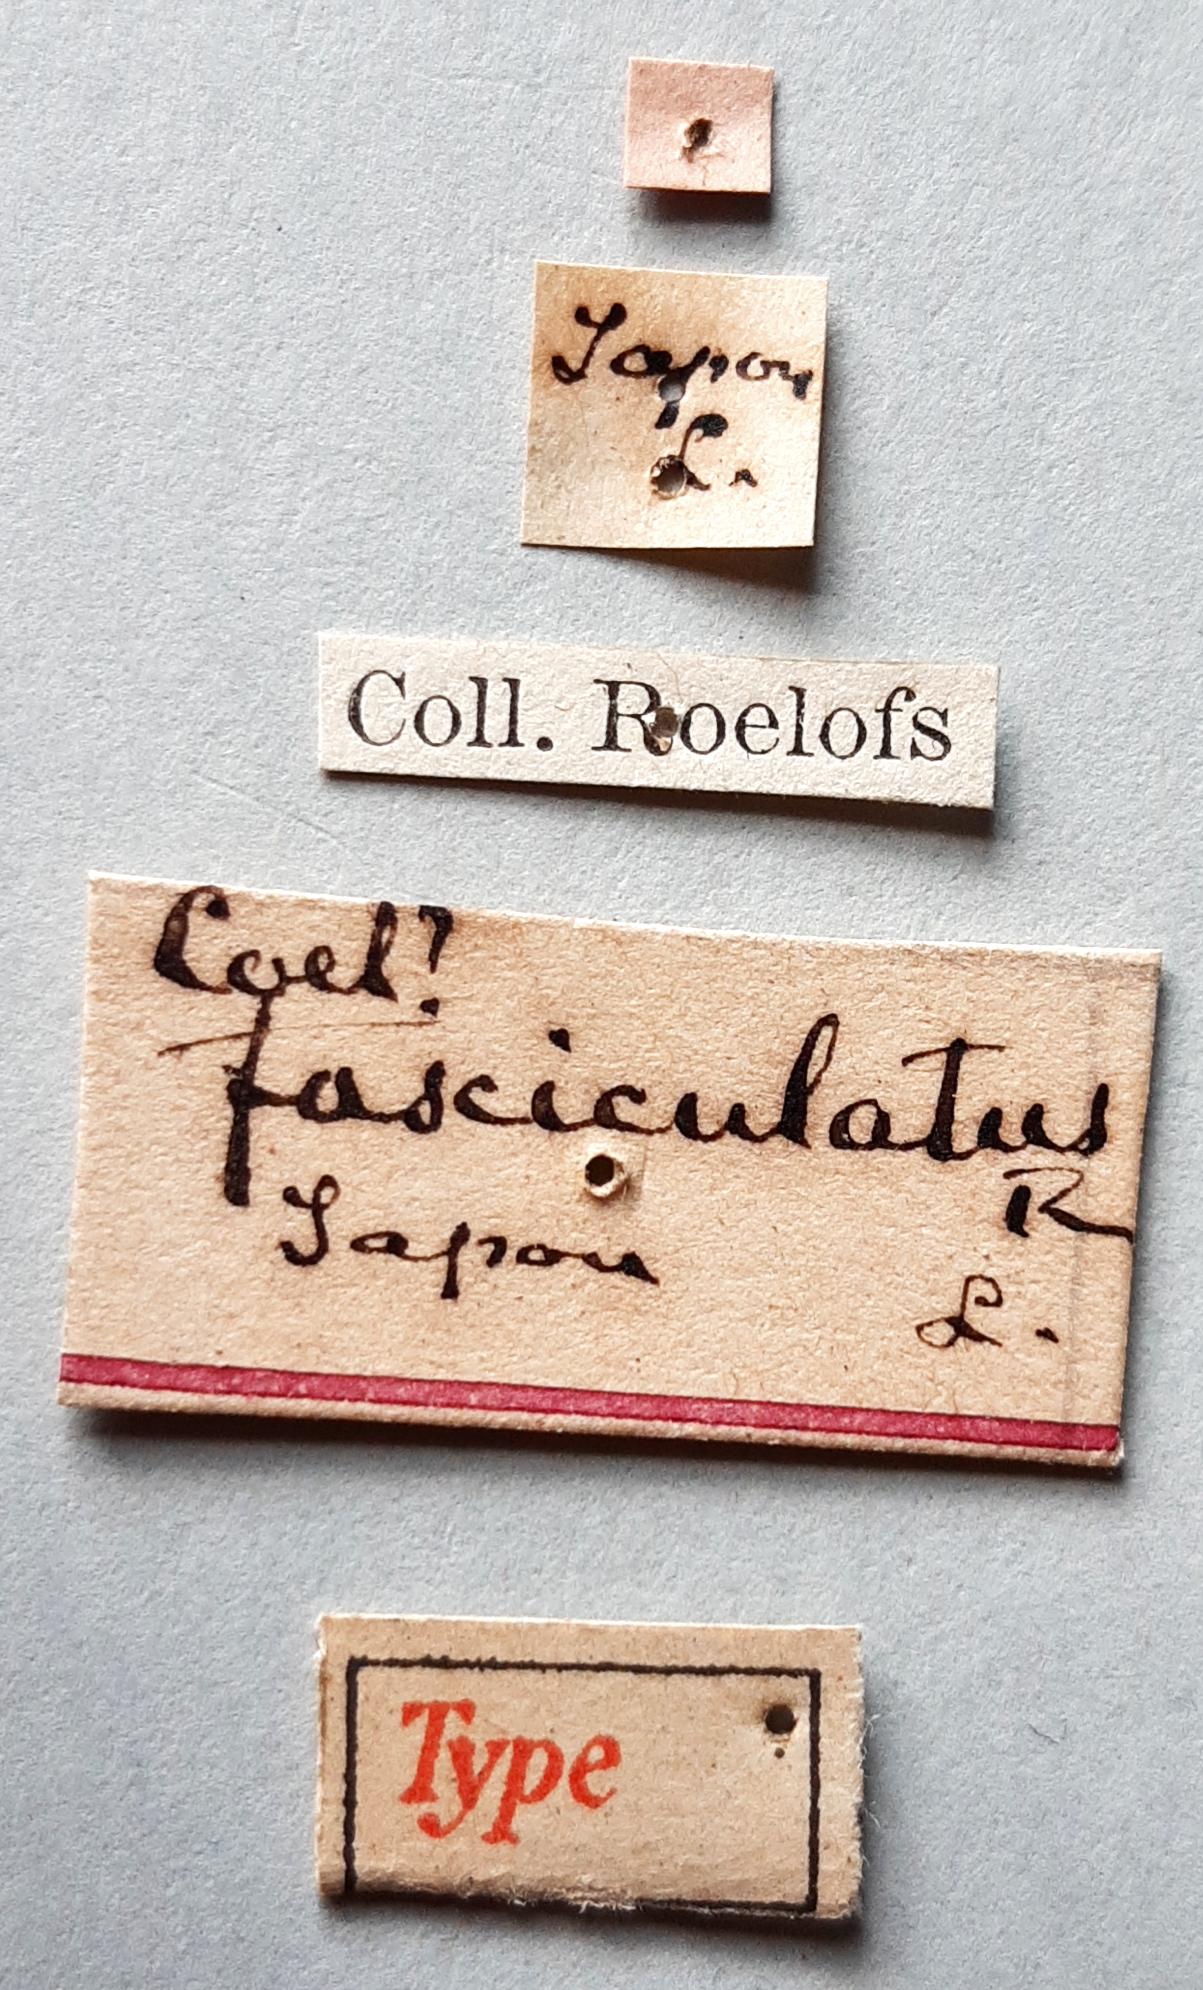 Coelosternus fascicularis Ht labels